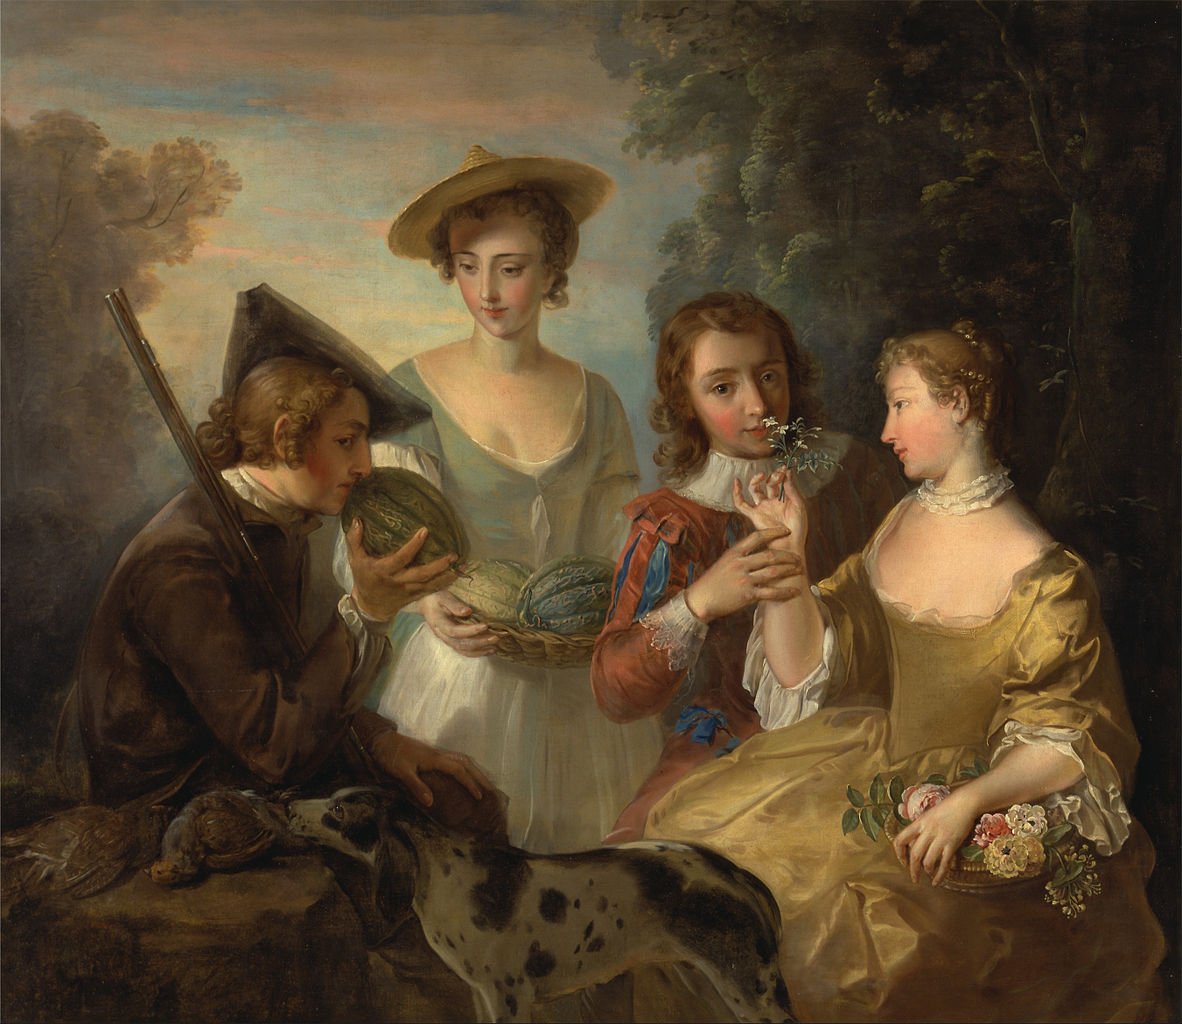 Le sens de l'odorat, entre 1744 et 1747, huile sur toile, Philippe Mercier